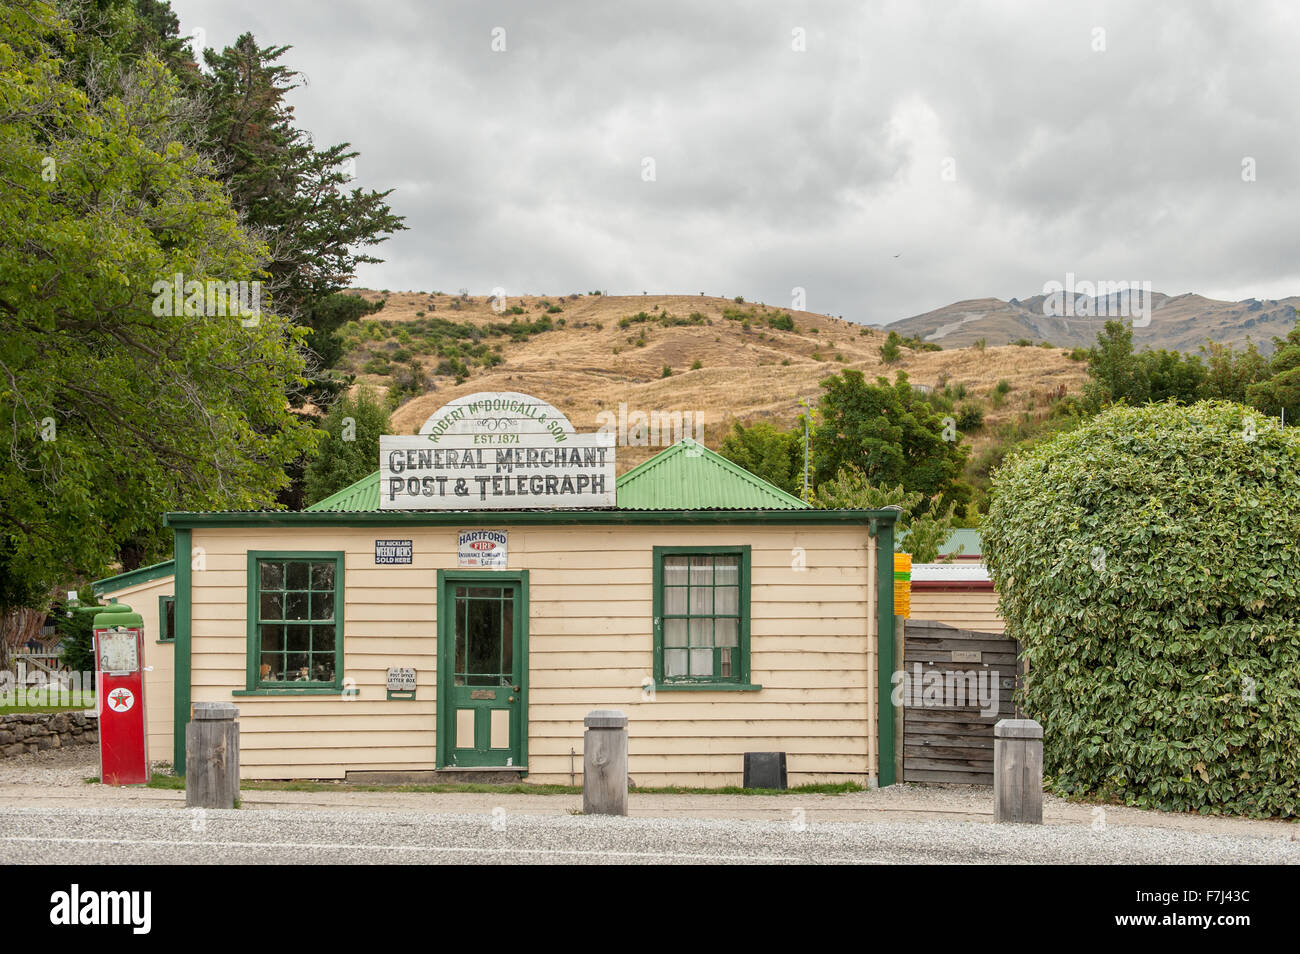 Vintage Cardrona bureau de poste de scenic Cardrona, Central Otago, île du Sud, Nouvelle-Zélande. Banque D'Images